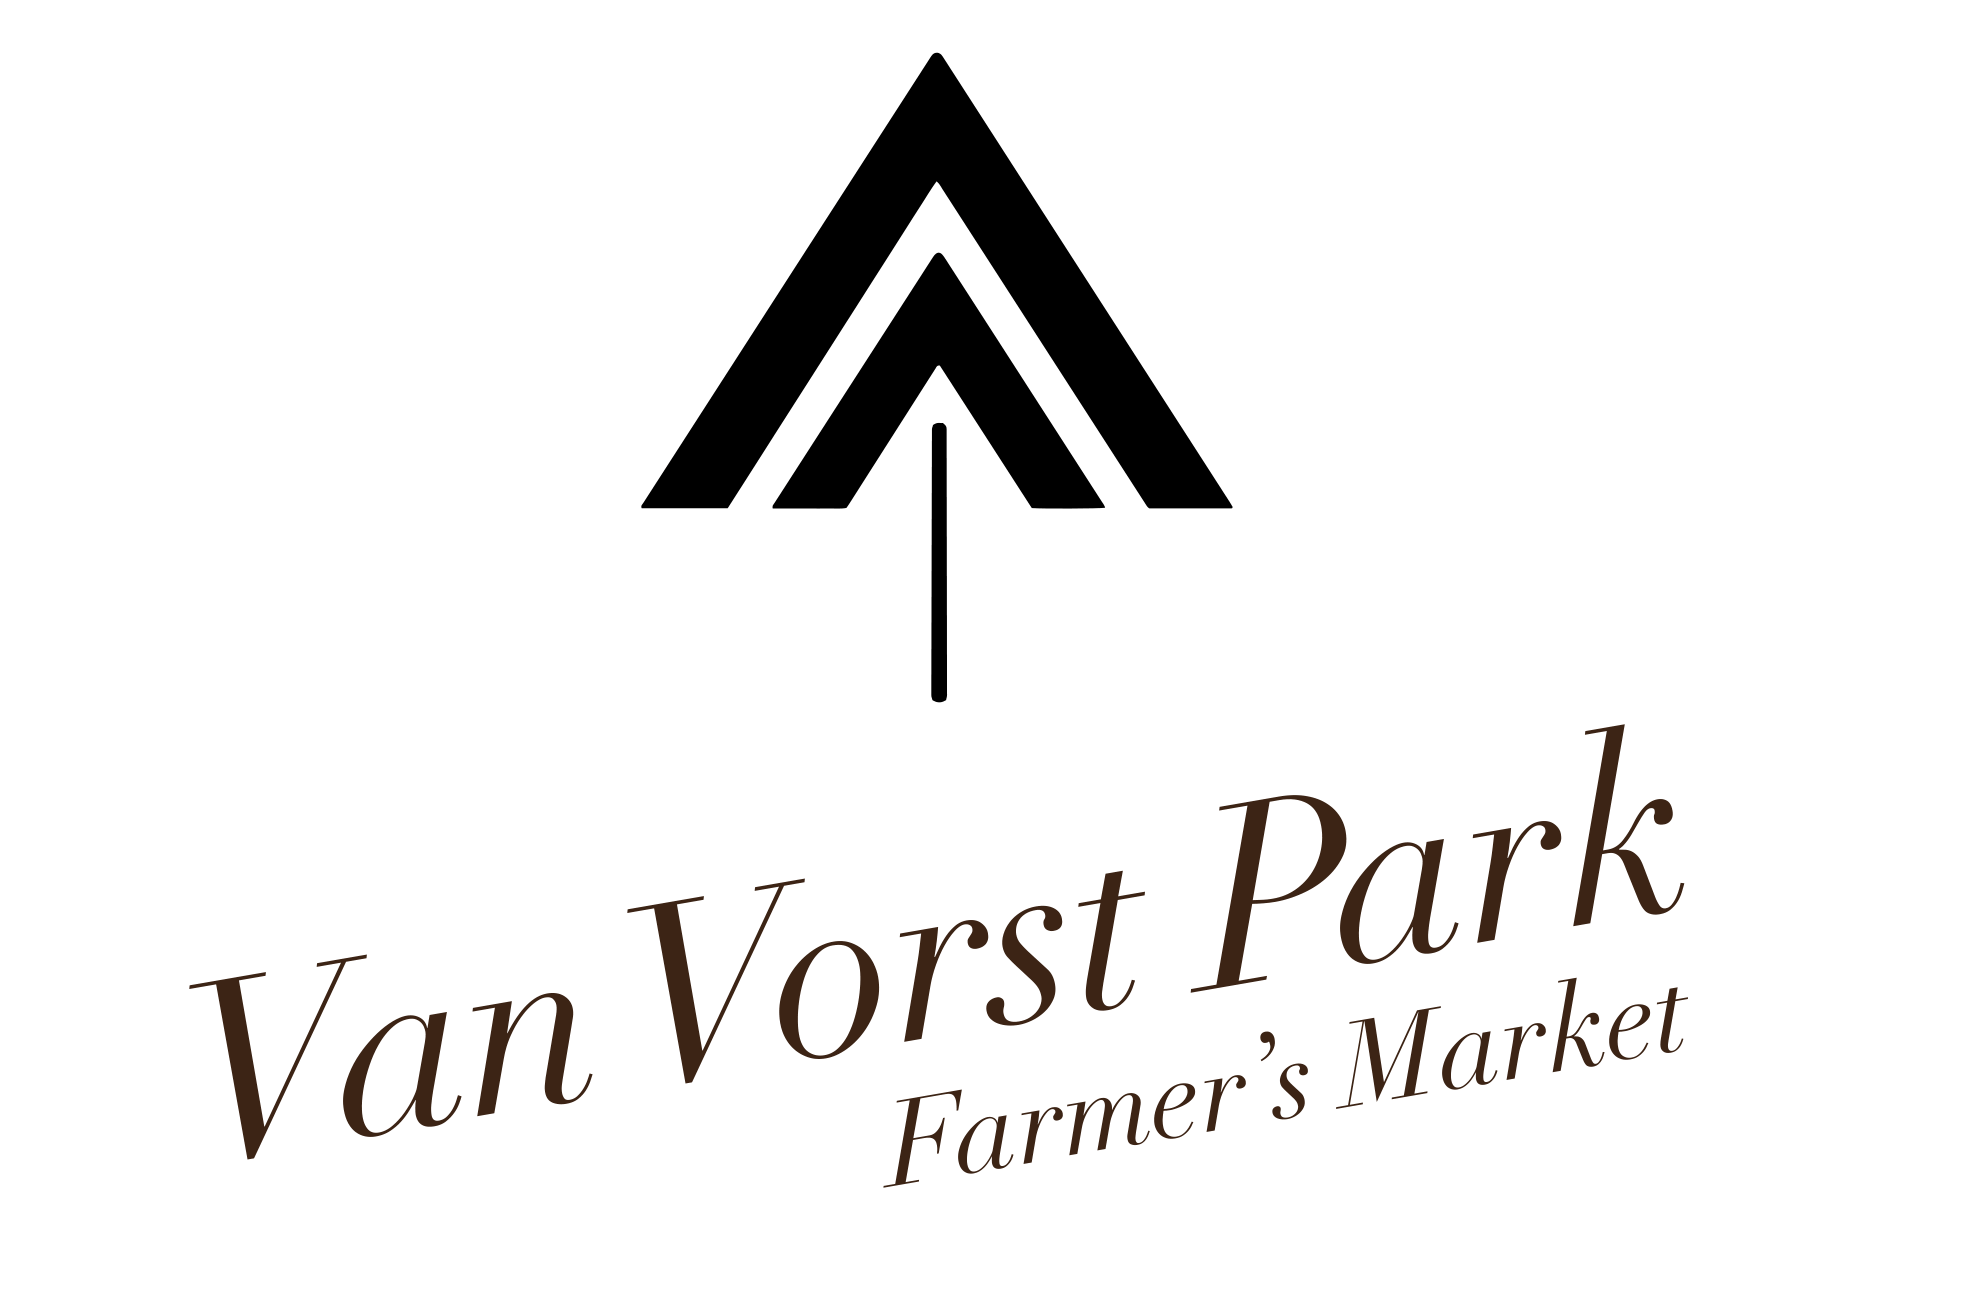 Van Vorst Park Farmer's Market